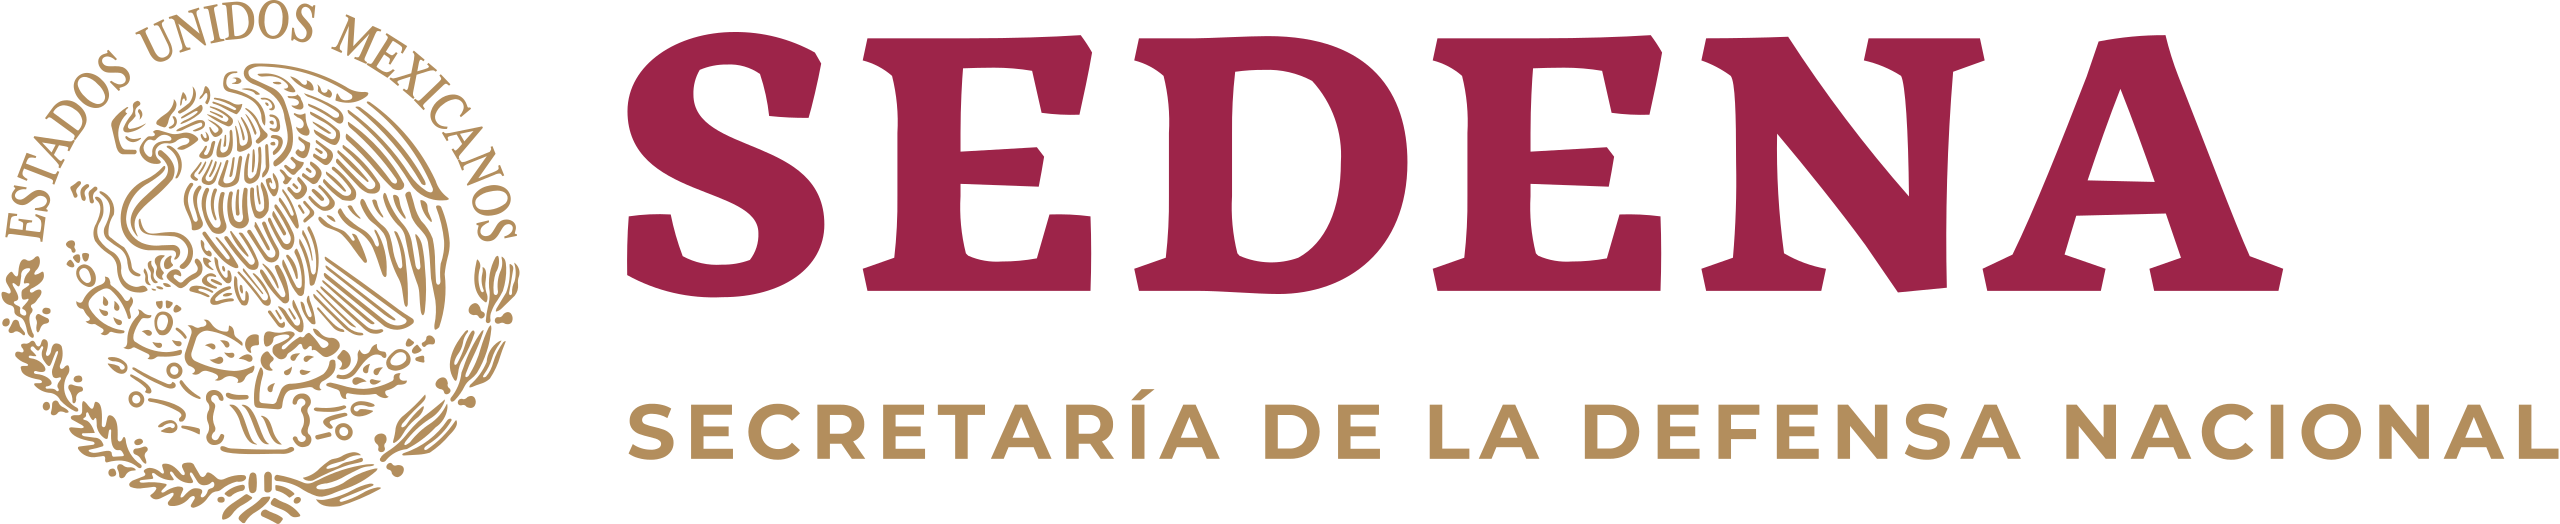 Logotipo SEDENA Secretaria de la Defensa Nacional